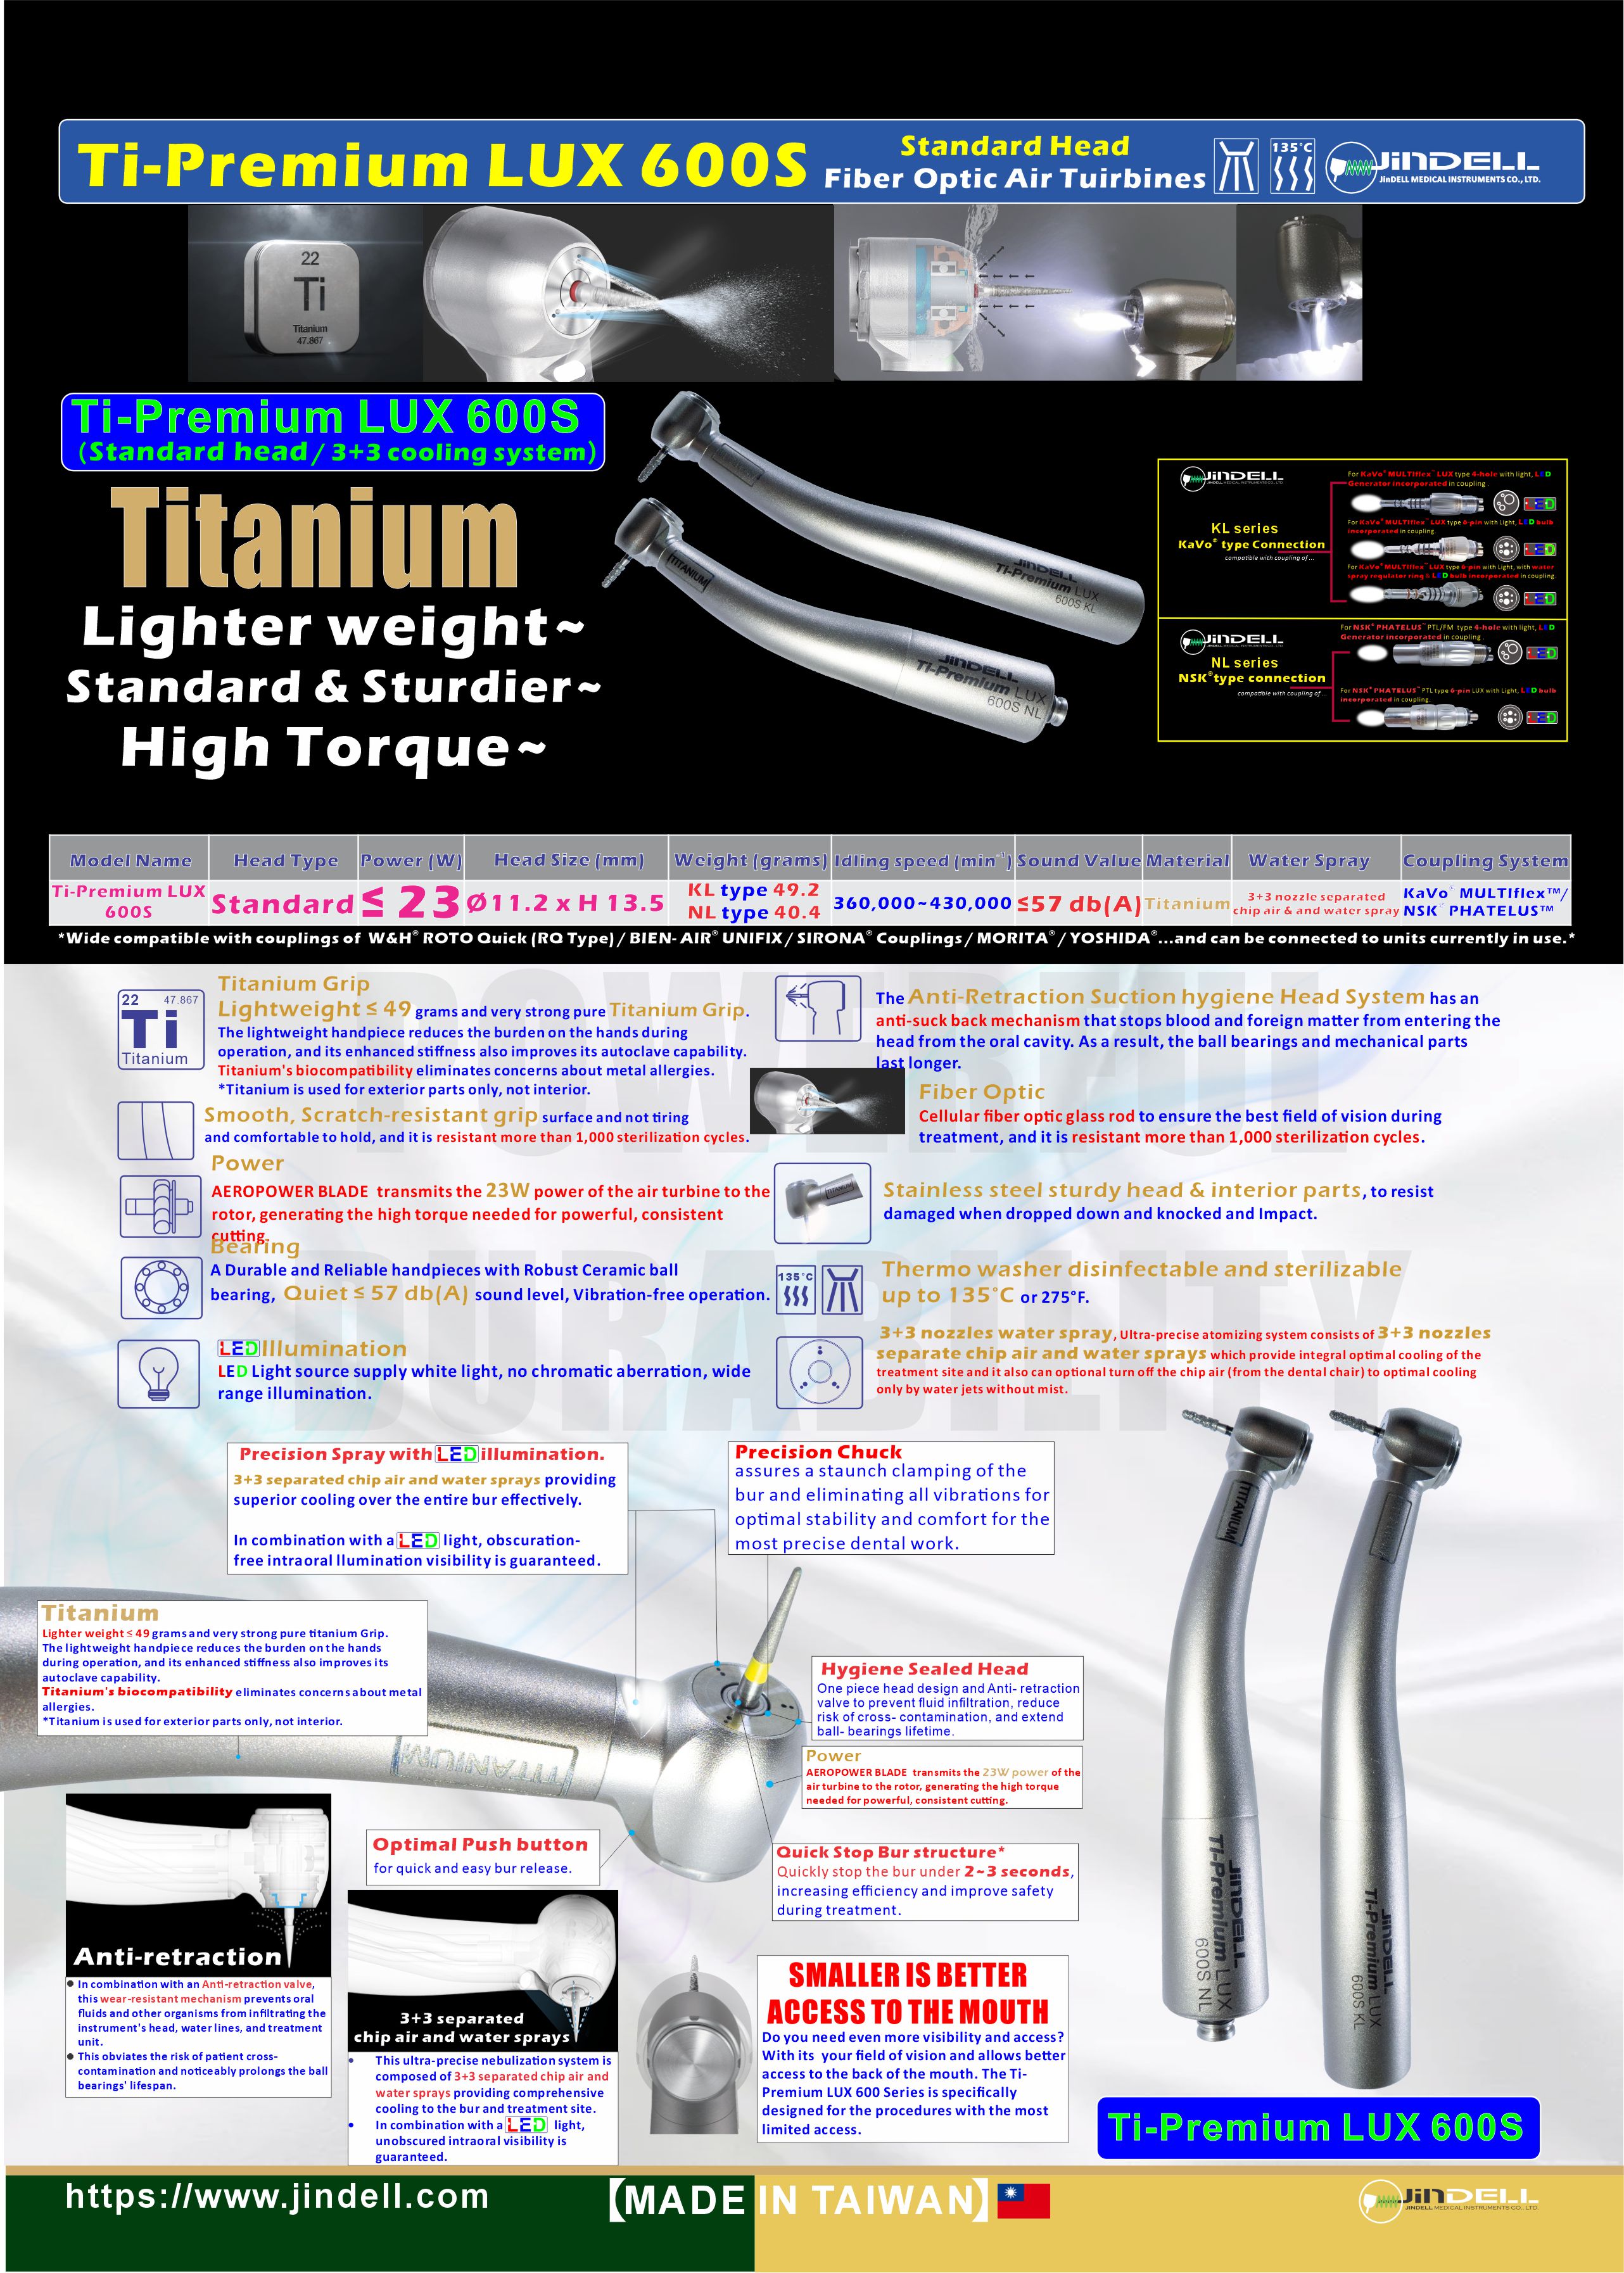 Ti-Premium LUX 600S series